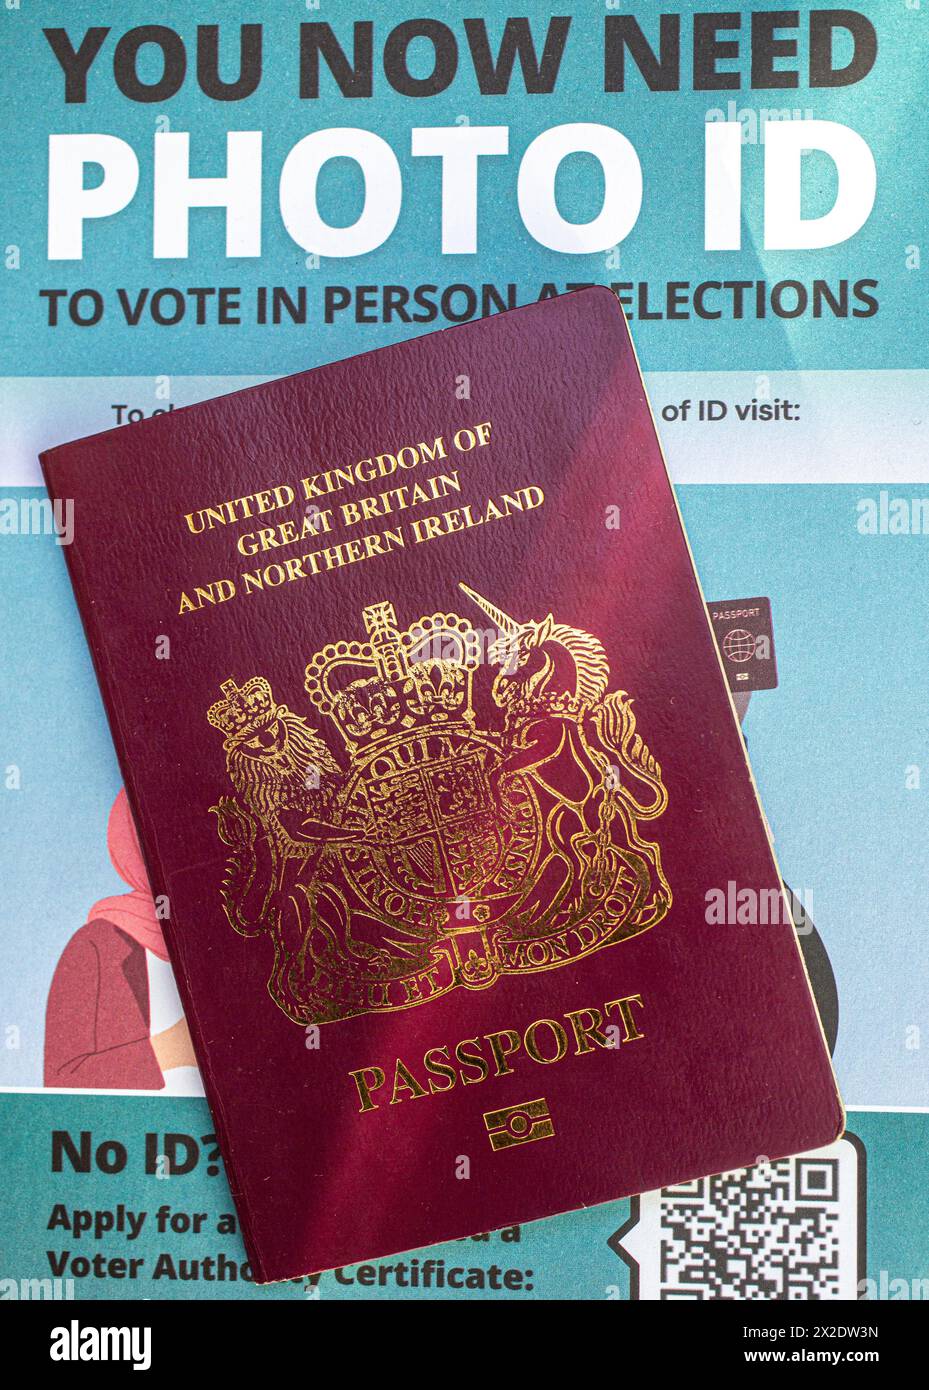 Passeport britannique avec un dépliant montrant que les électeurs en Angleterre devront présenter une pièce d'identité avec photo pour voter dans les bureaux de vote lors de certaines élections. ROYAUME-UNI Banque D'Images